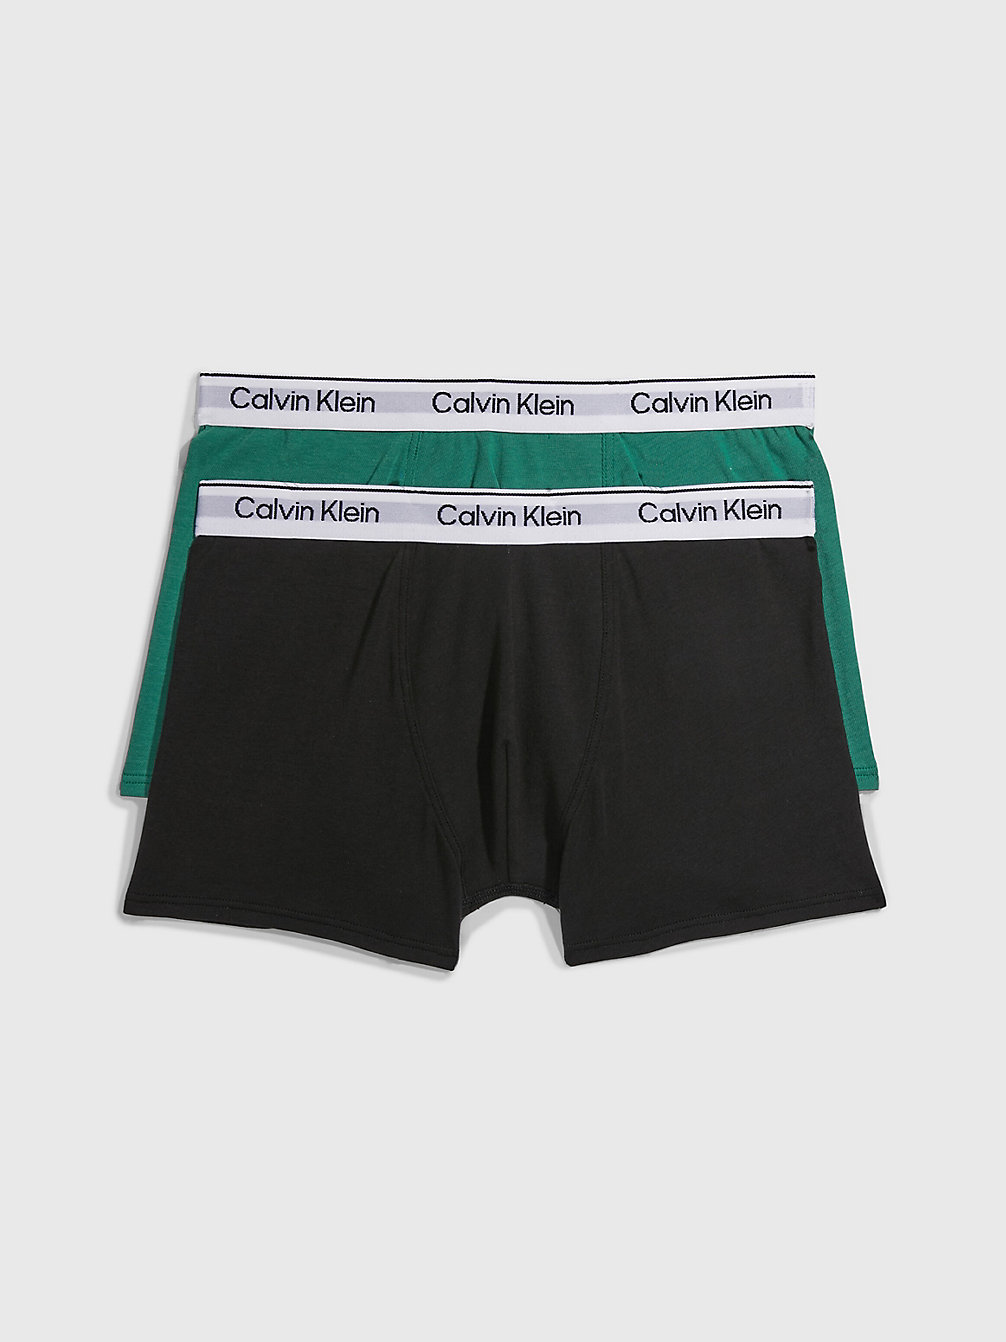 Boxer Aderenti Bambino In Confezione Da 2 - Modern Cotton > FOLIAGEGREEN/PVHBLACK > undefined bambino > Calvin Klein